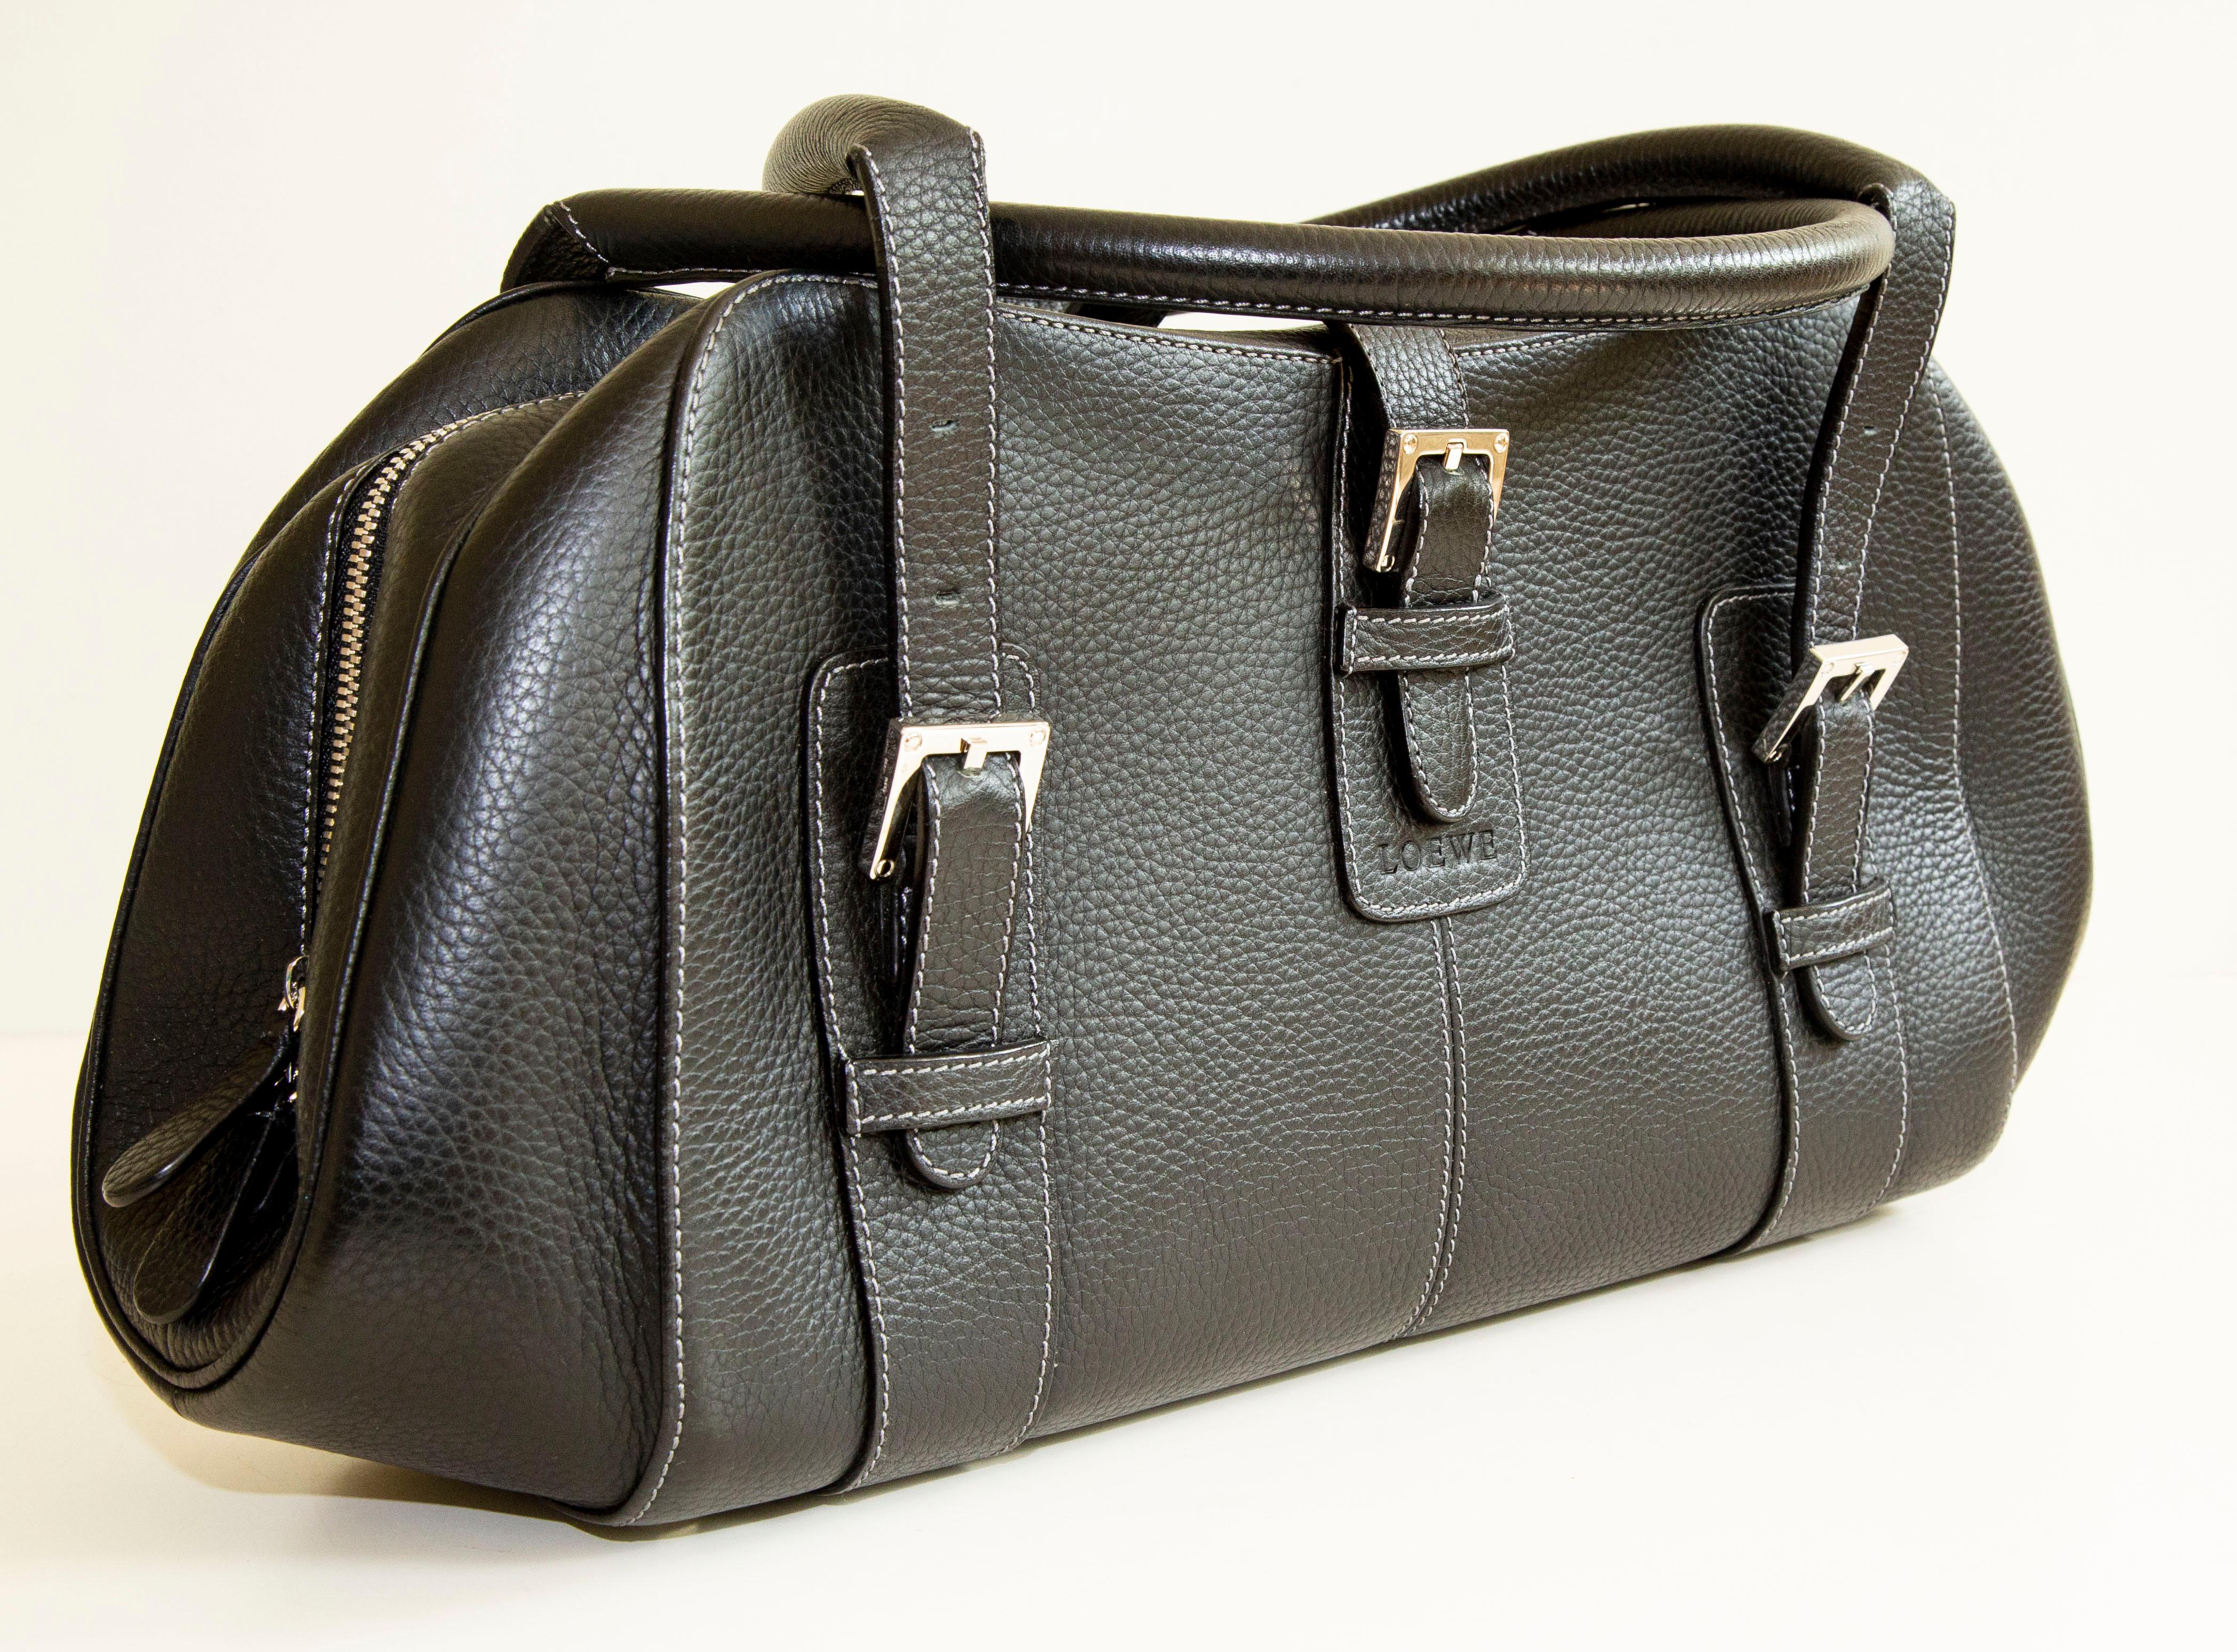 Un authentique sac à bandoulière Loewe. L'extérieur du sac est en cuir noir et le matériel est de couleur argentée. L'intérieur est doublé de tissu noir Loewe et comporte trois poches à glissière. L'intérieur est propre et soigné. L'extérieur et le